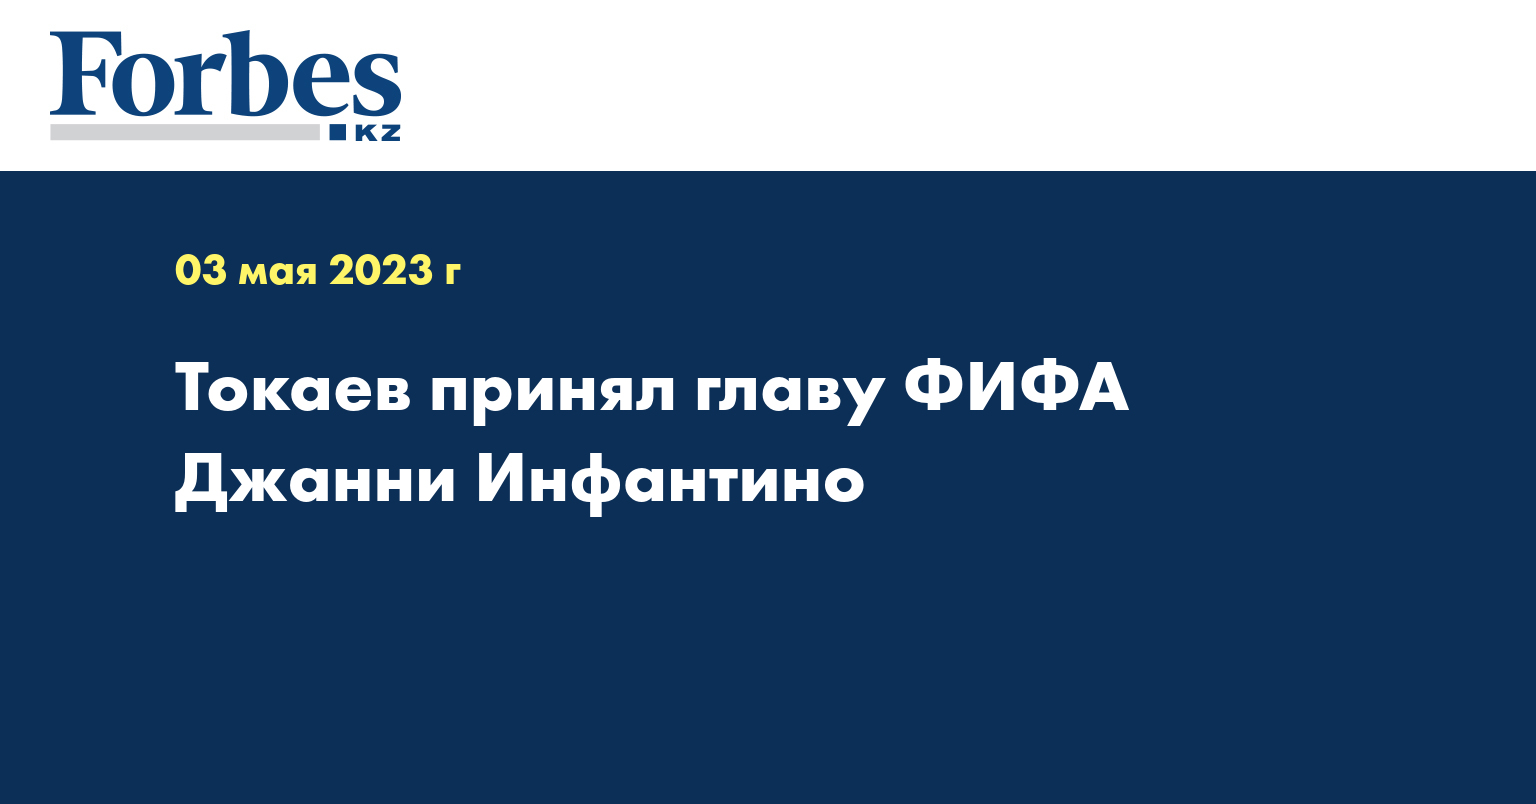 Токаев принял главу ФИФА Джанни Инфантино